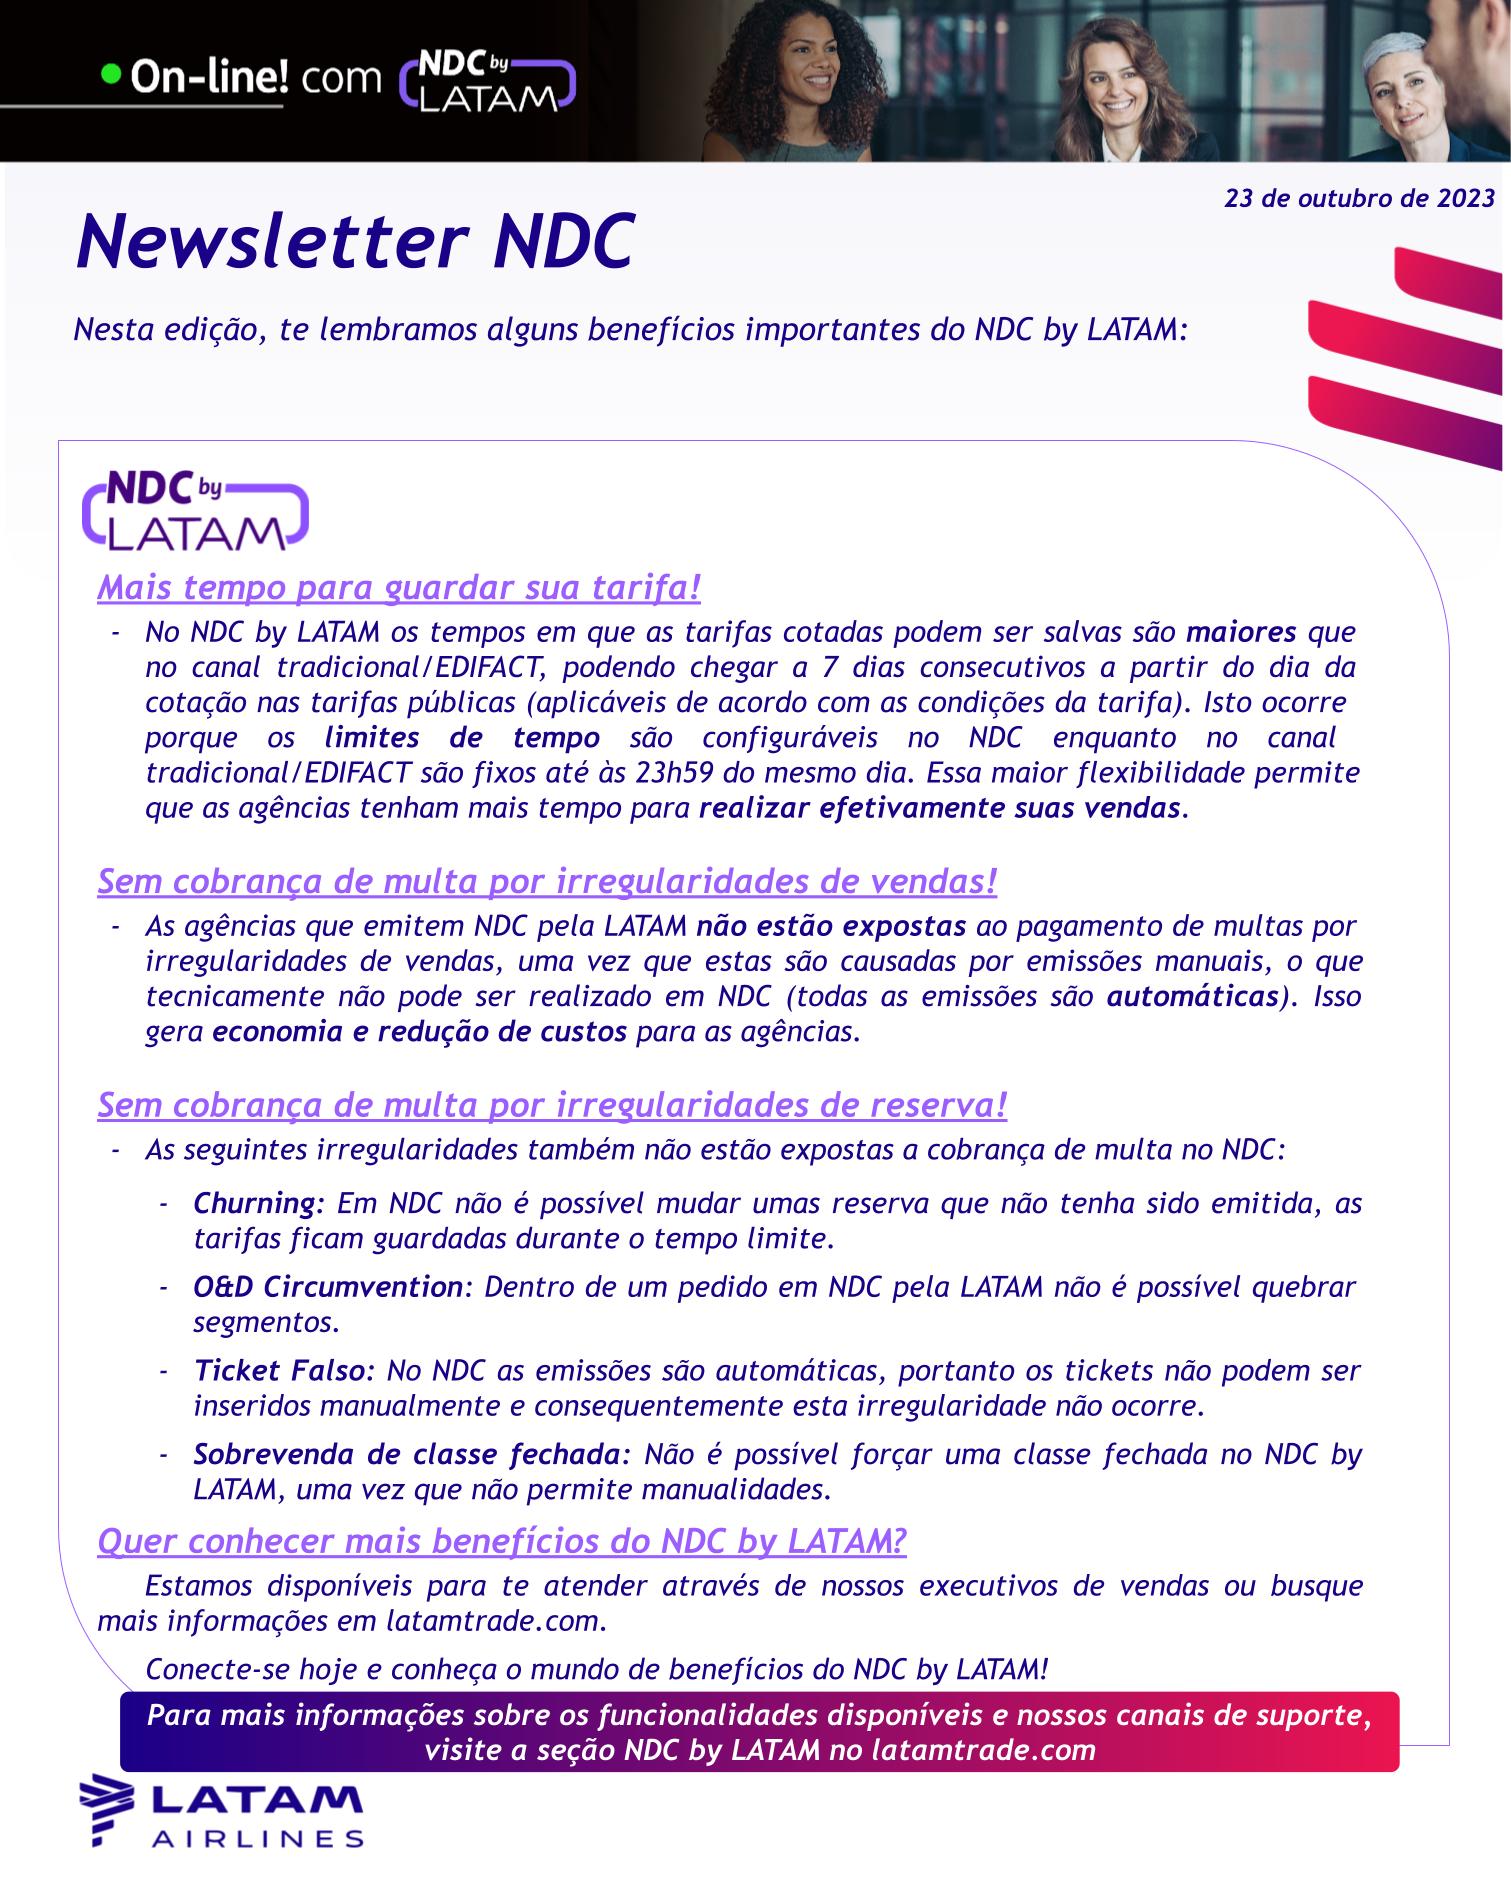 Newsletter NDC by LATAM